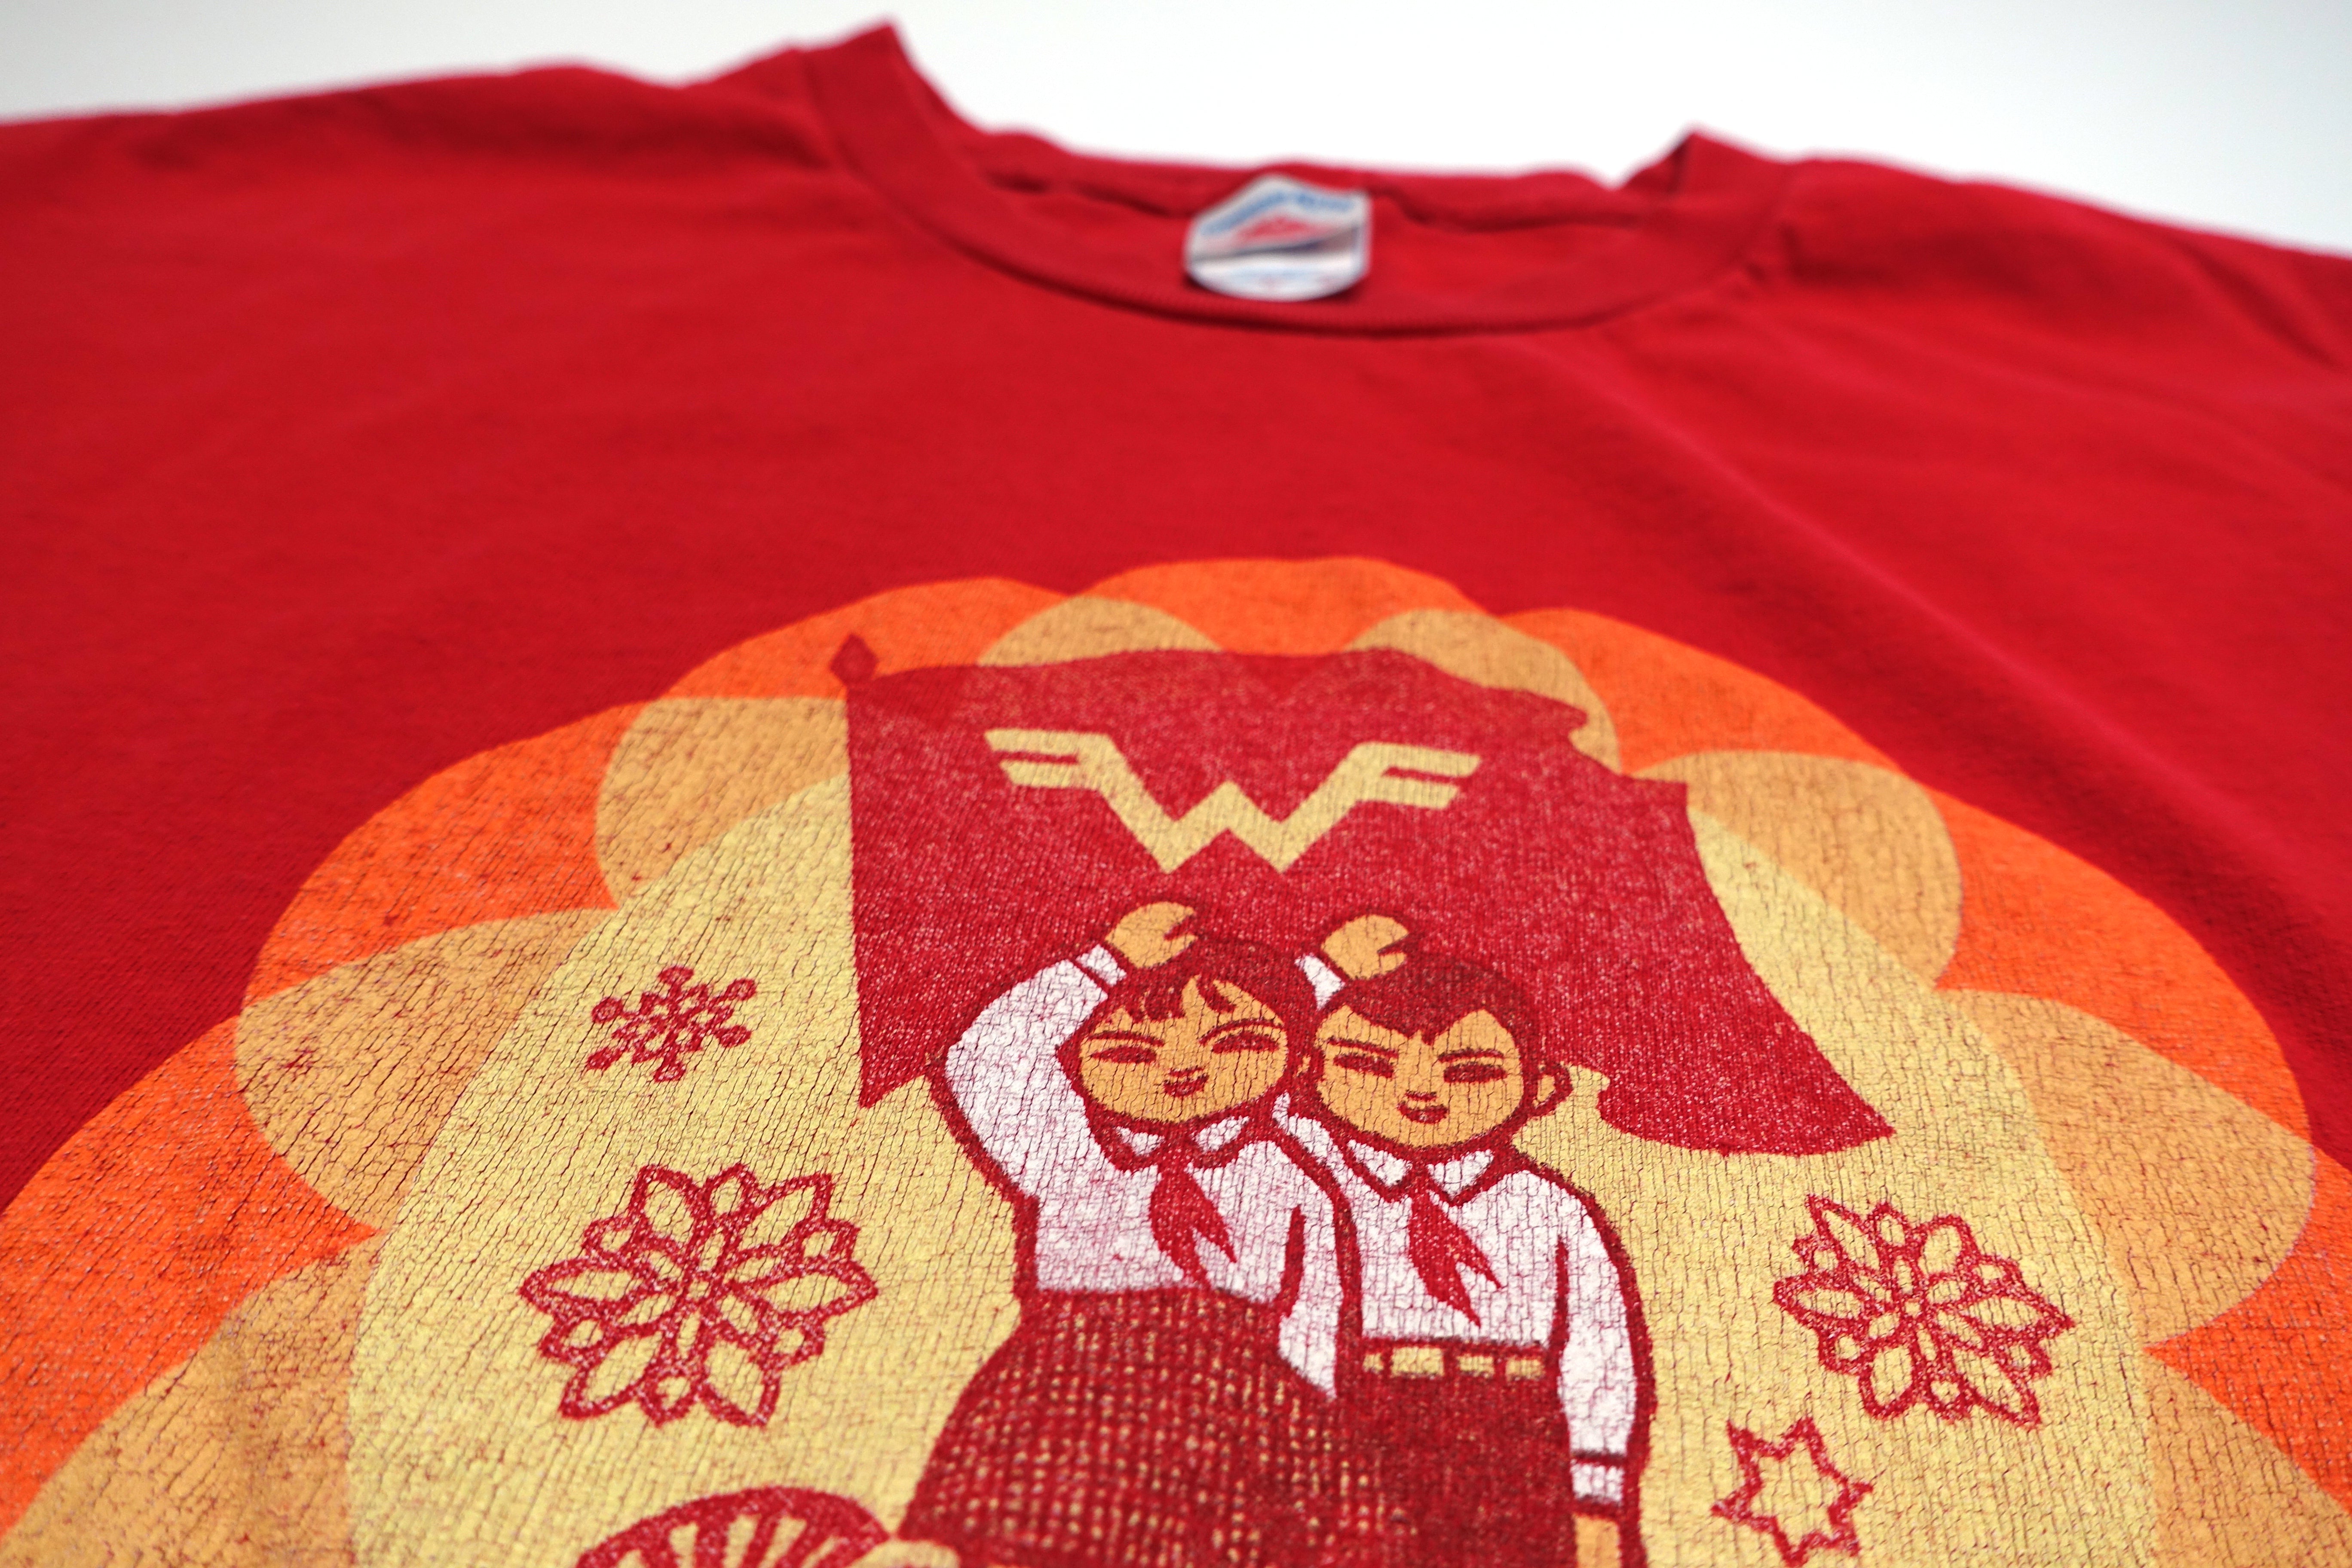 Weezer - Cartoon Asian Kids Red Album 2008 Tour Shirt Size Large